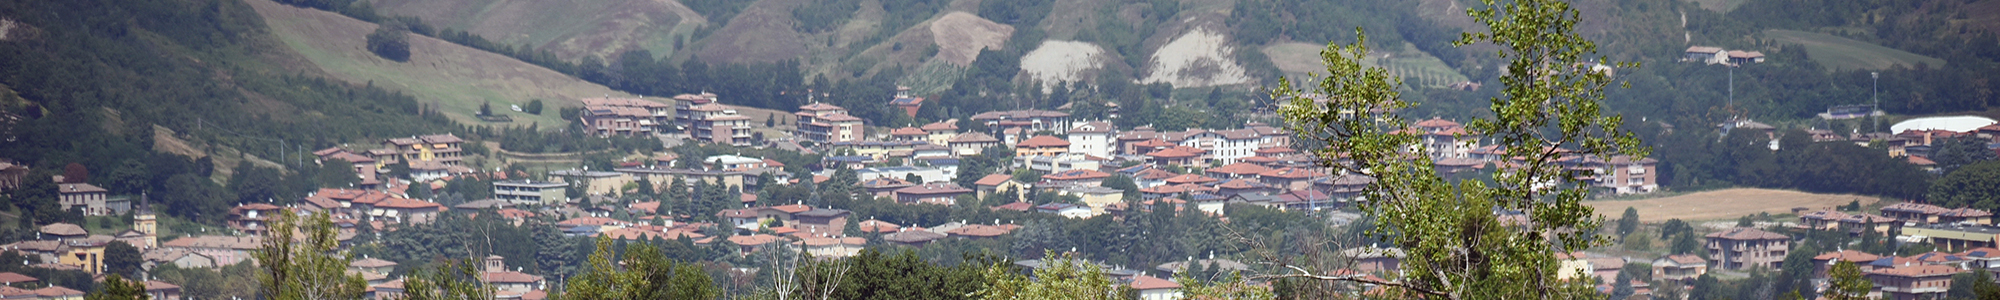 Foto panoramica di un comune montano dell'Emilia-Romagna